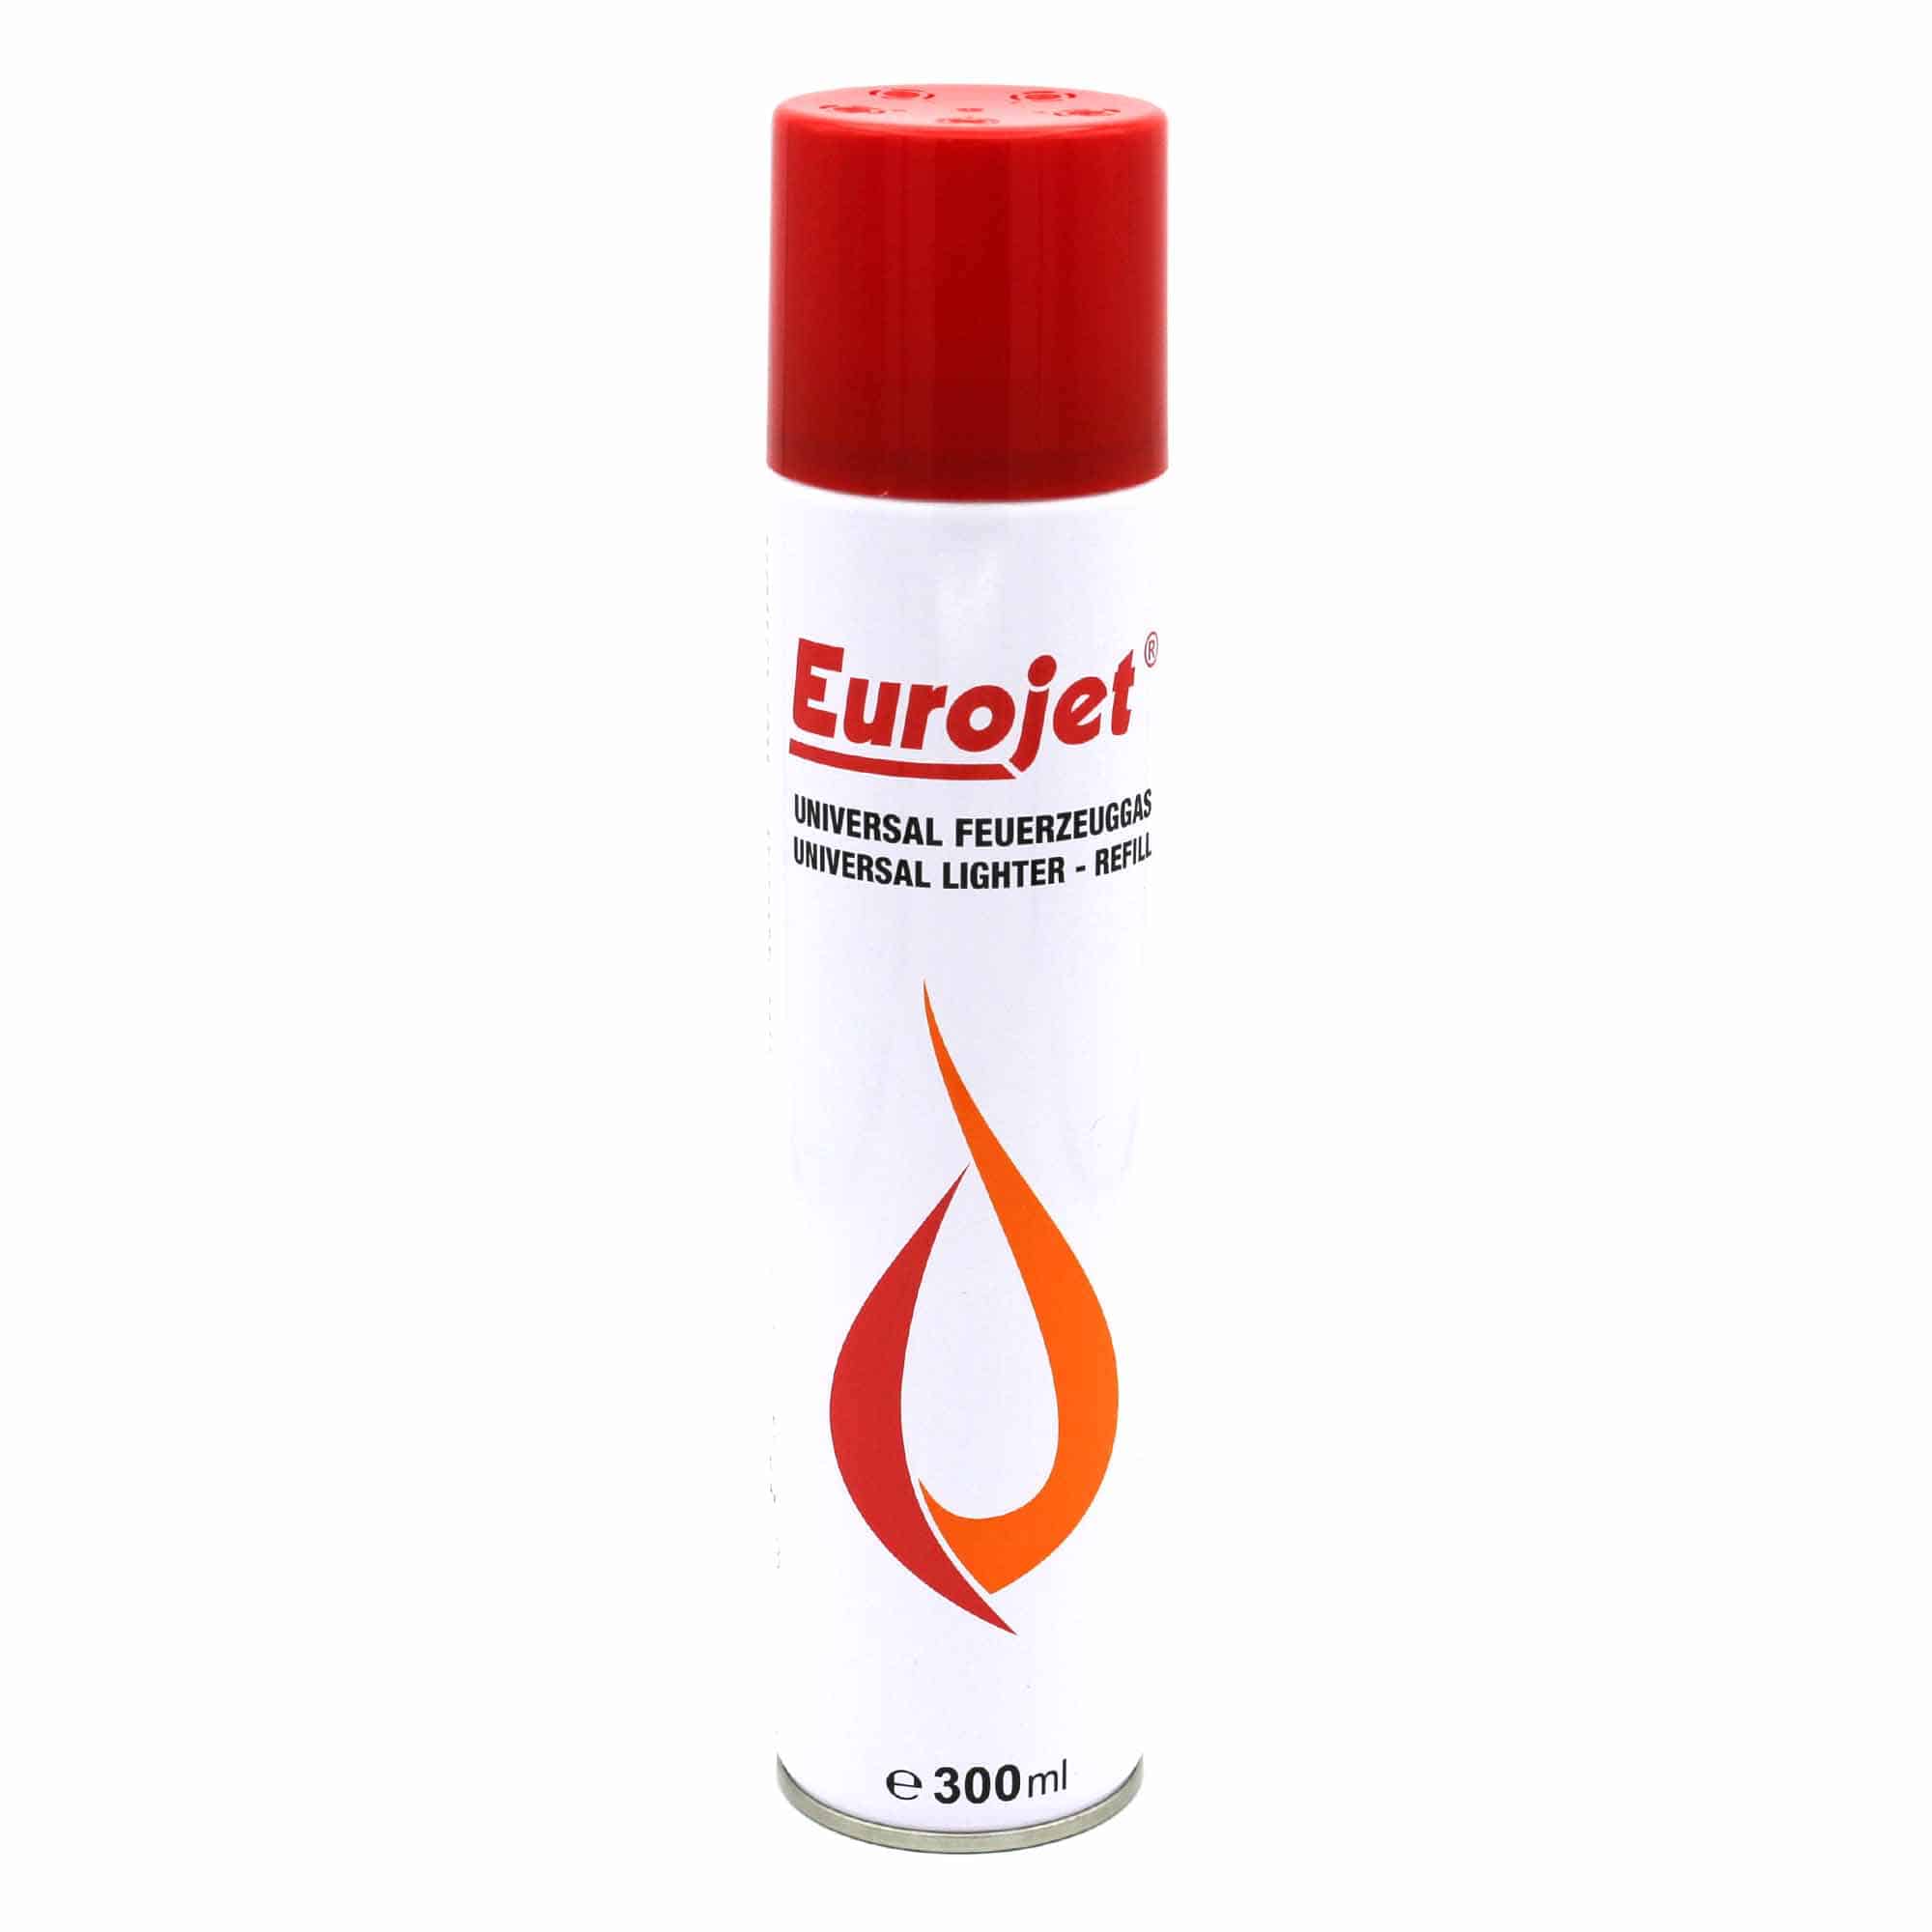 Eurojet Feuerzeuggas   Nachfüll Gas für Feuerzeuge   20ml